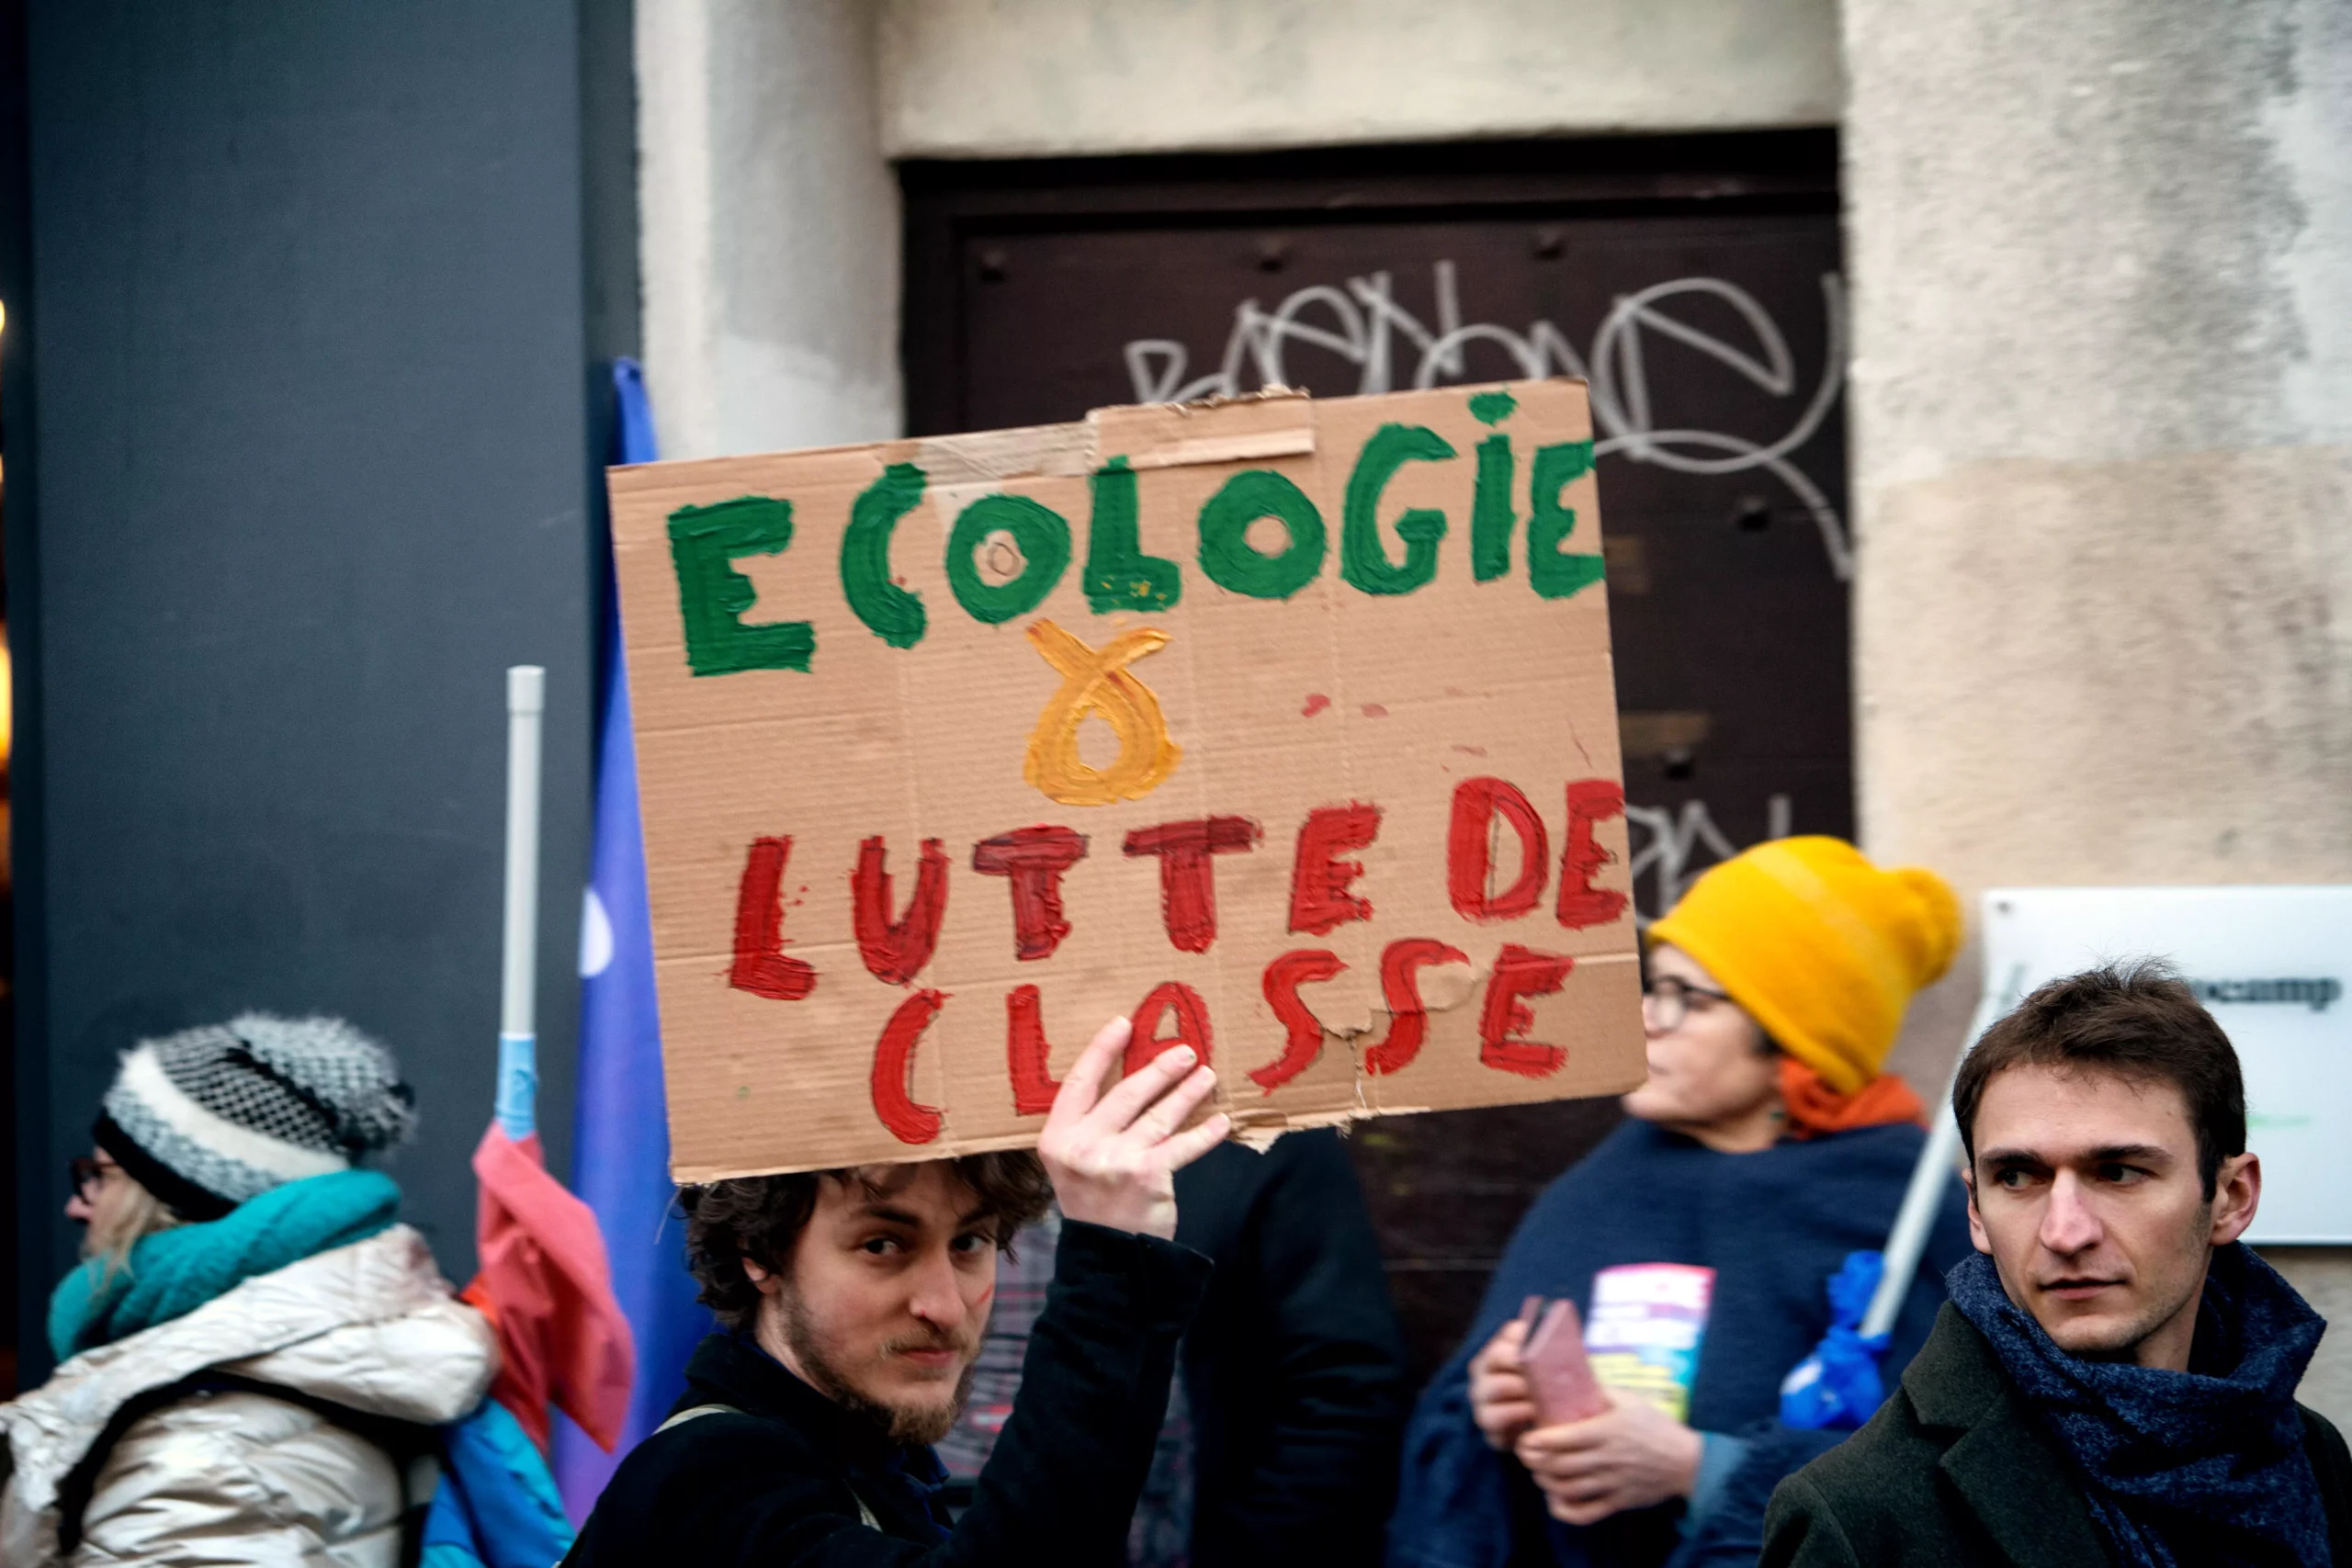 Ecologie & lutte des classes (pancarte) Copyright : Photothèque Rouge /Martin Noda / Hans Lucas